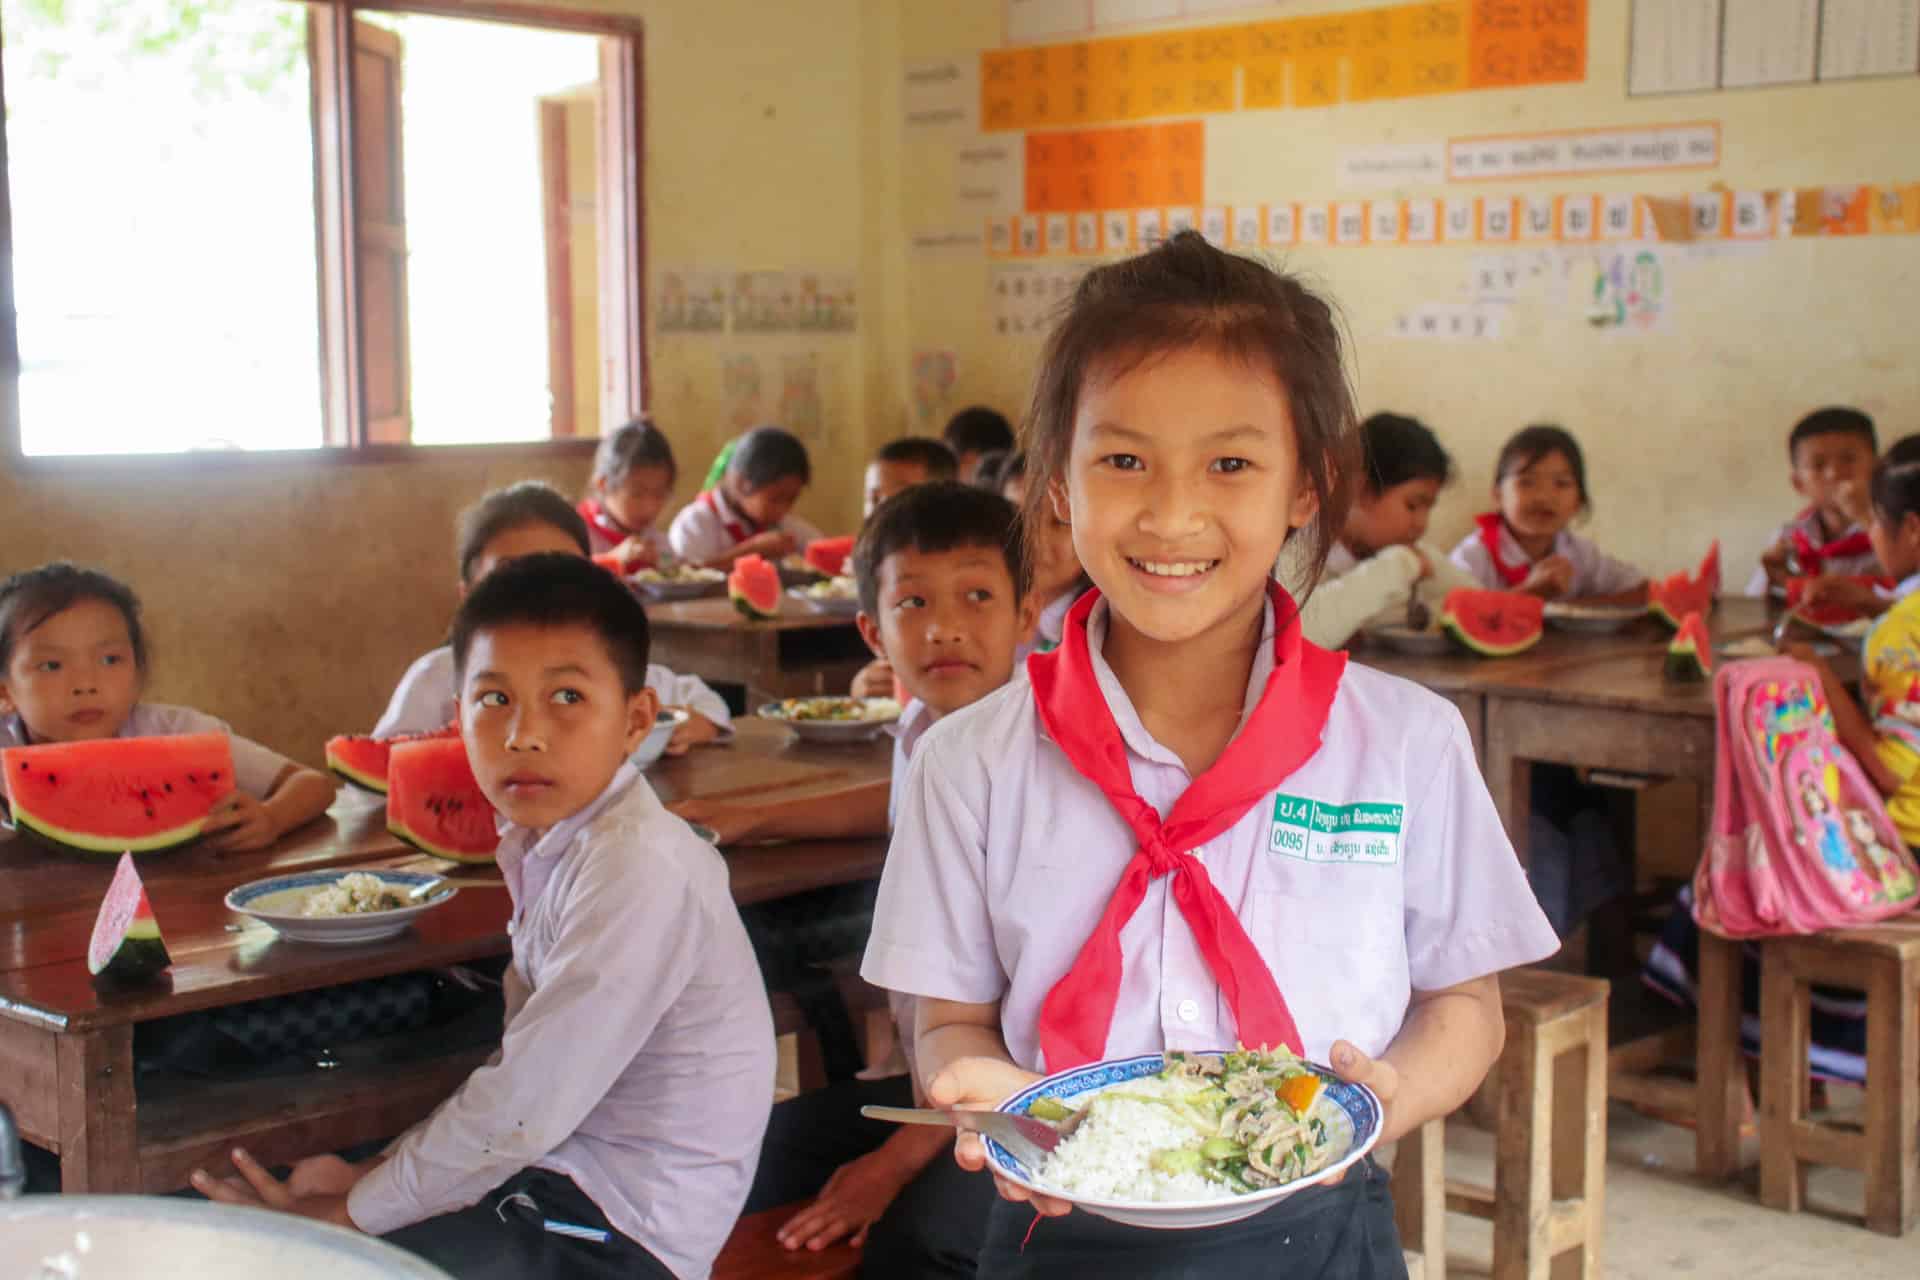 Dans la province rurale de Vientiane, Action Education soutient l'amélioration de la nutrition dans les écoles primaires grâce à l’utilisation de jardins potagers. Laos, mars 2022. © Action Education Laos